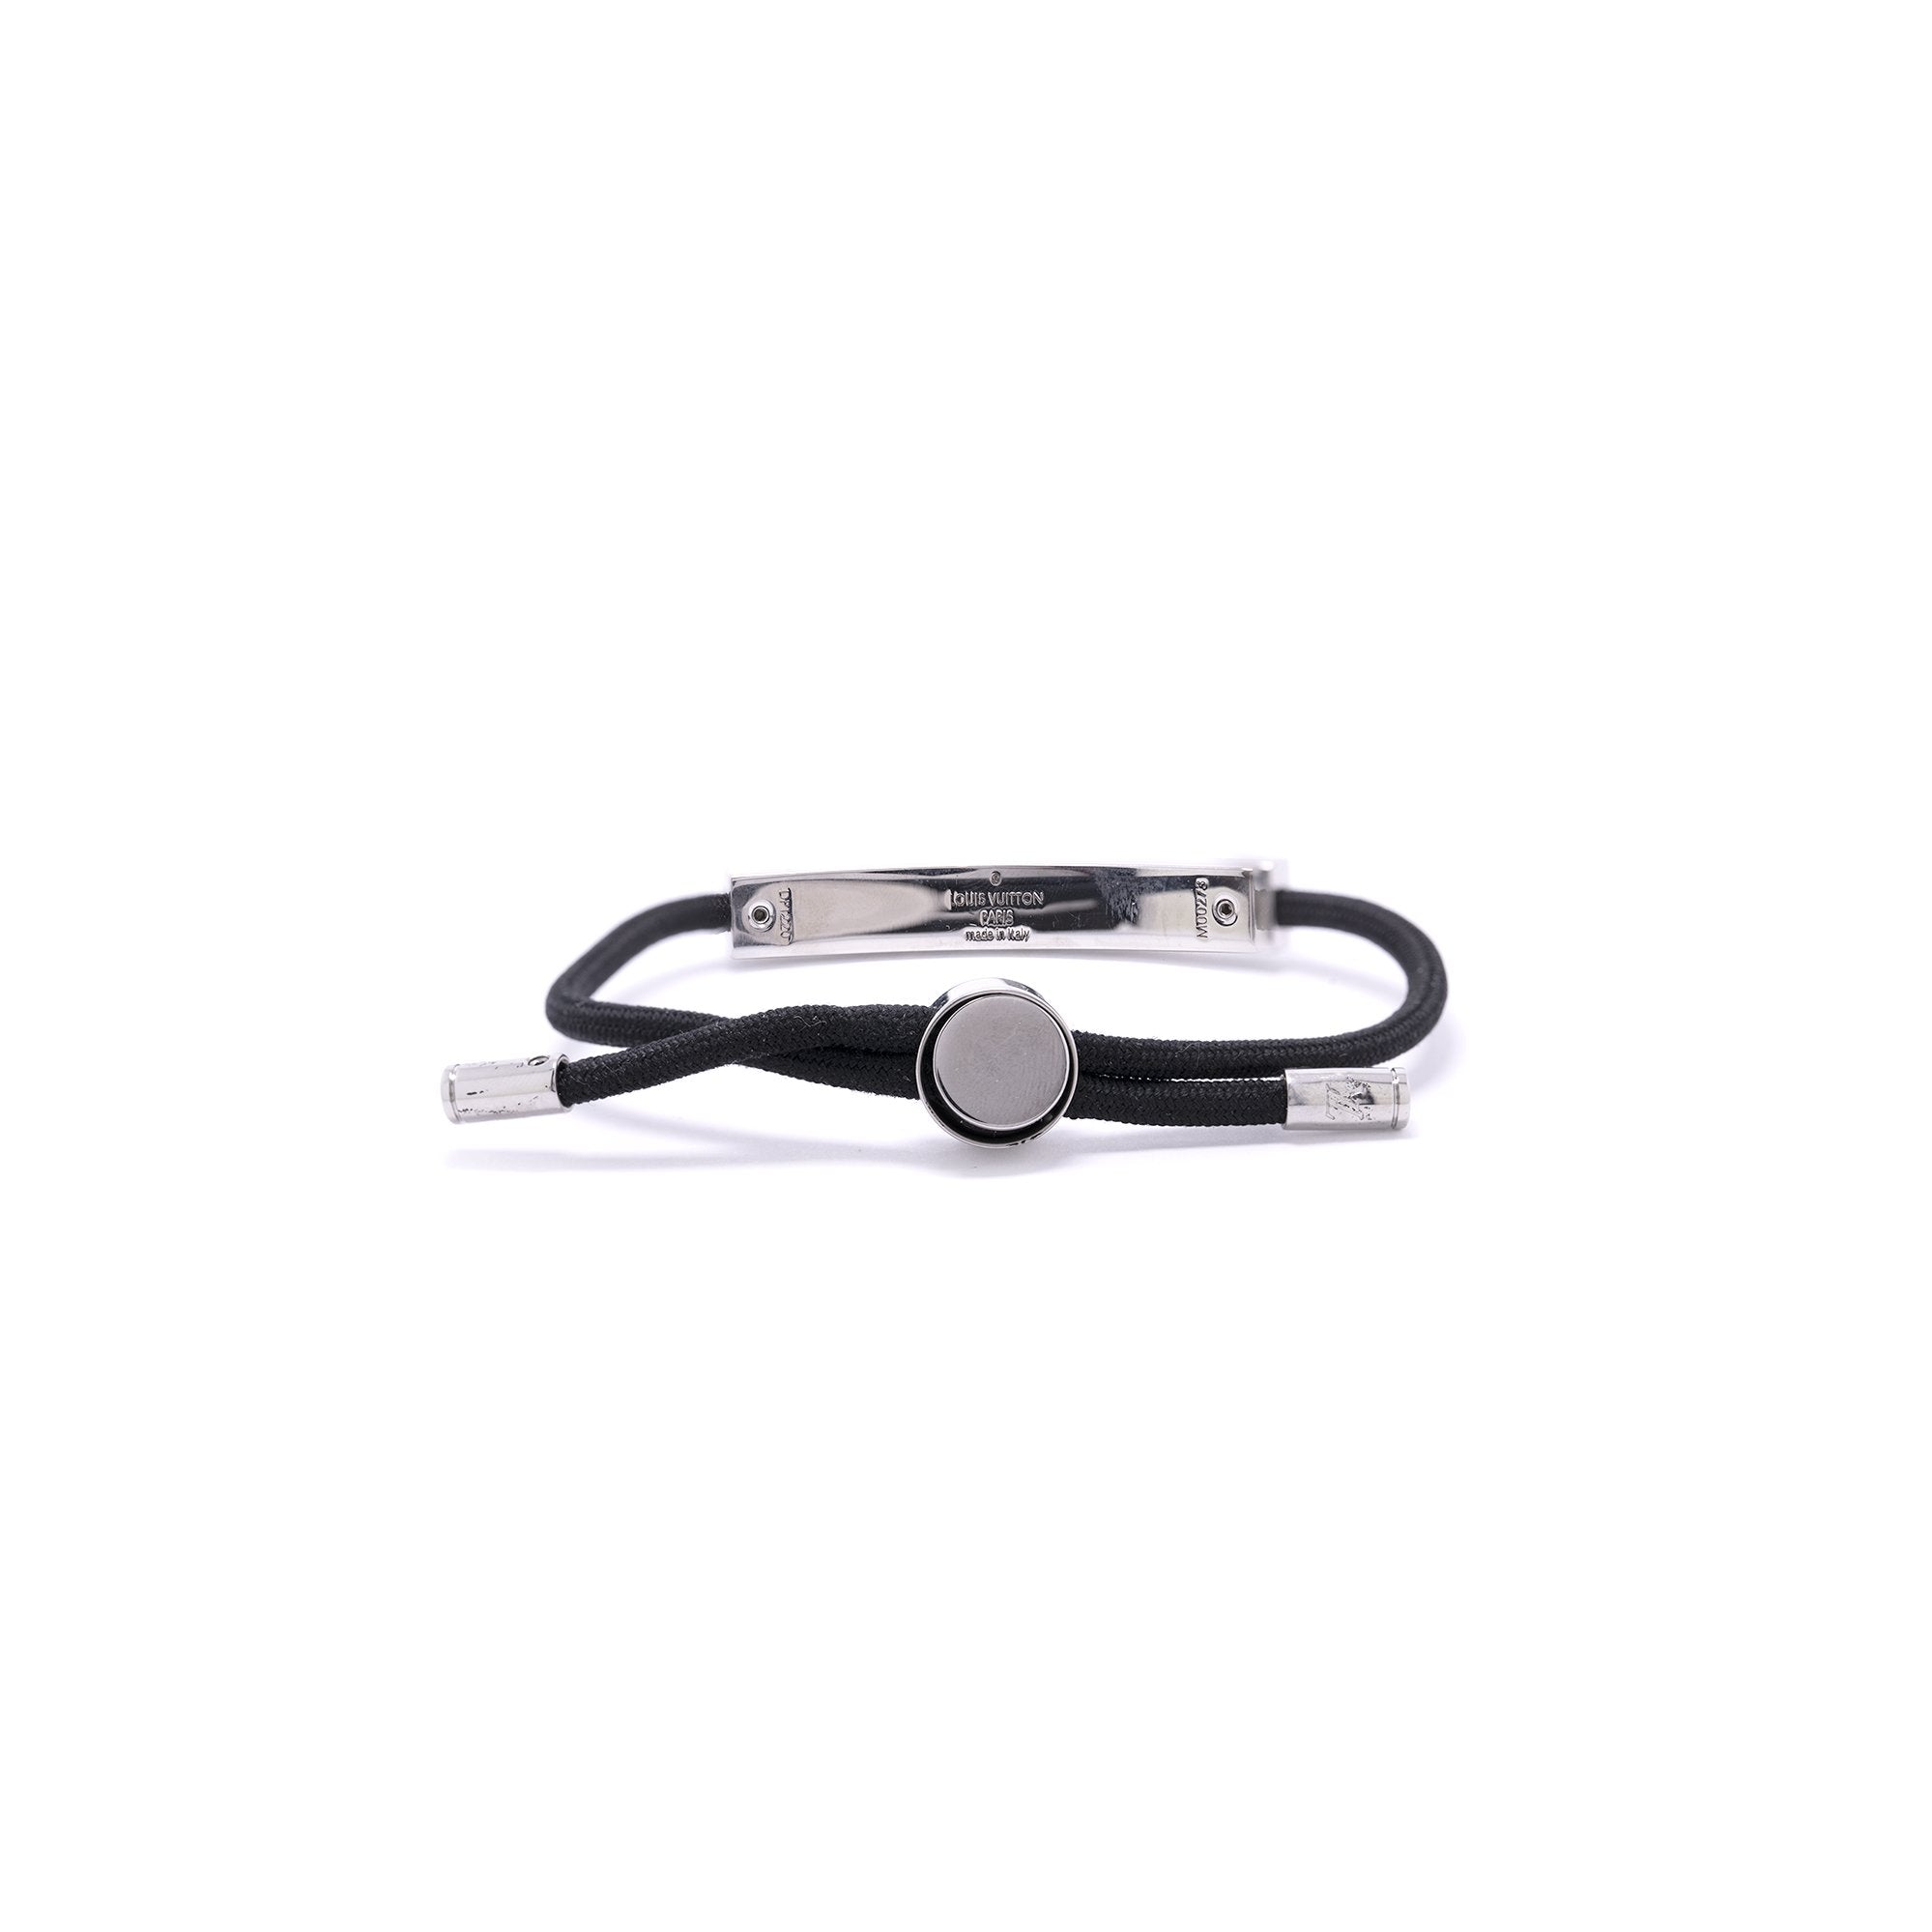 Louis Vuitton LV Space Bracelet w/ Box